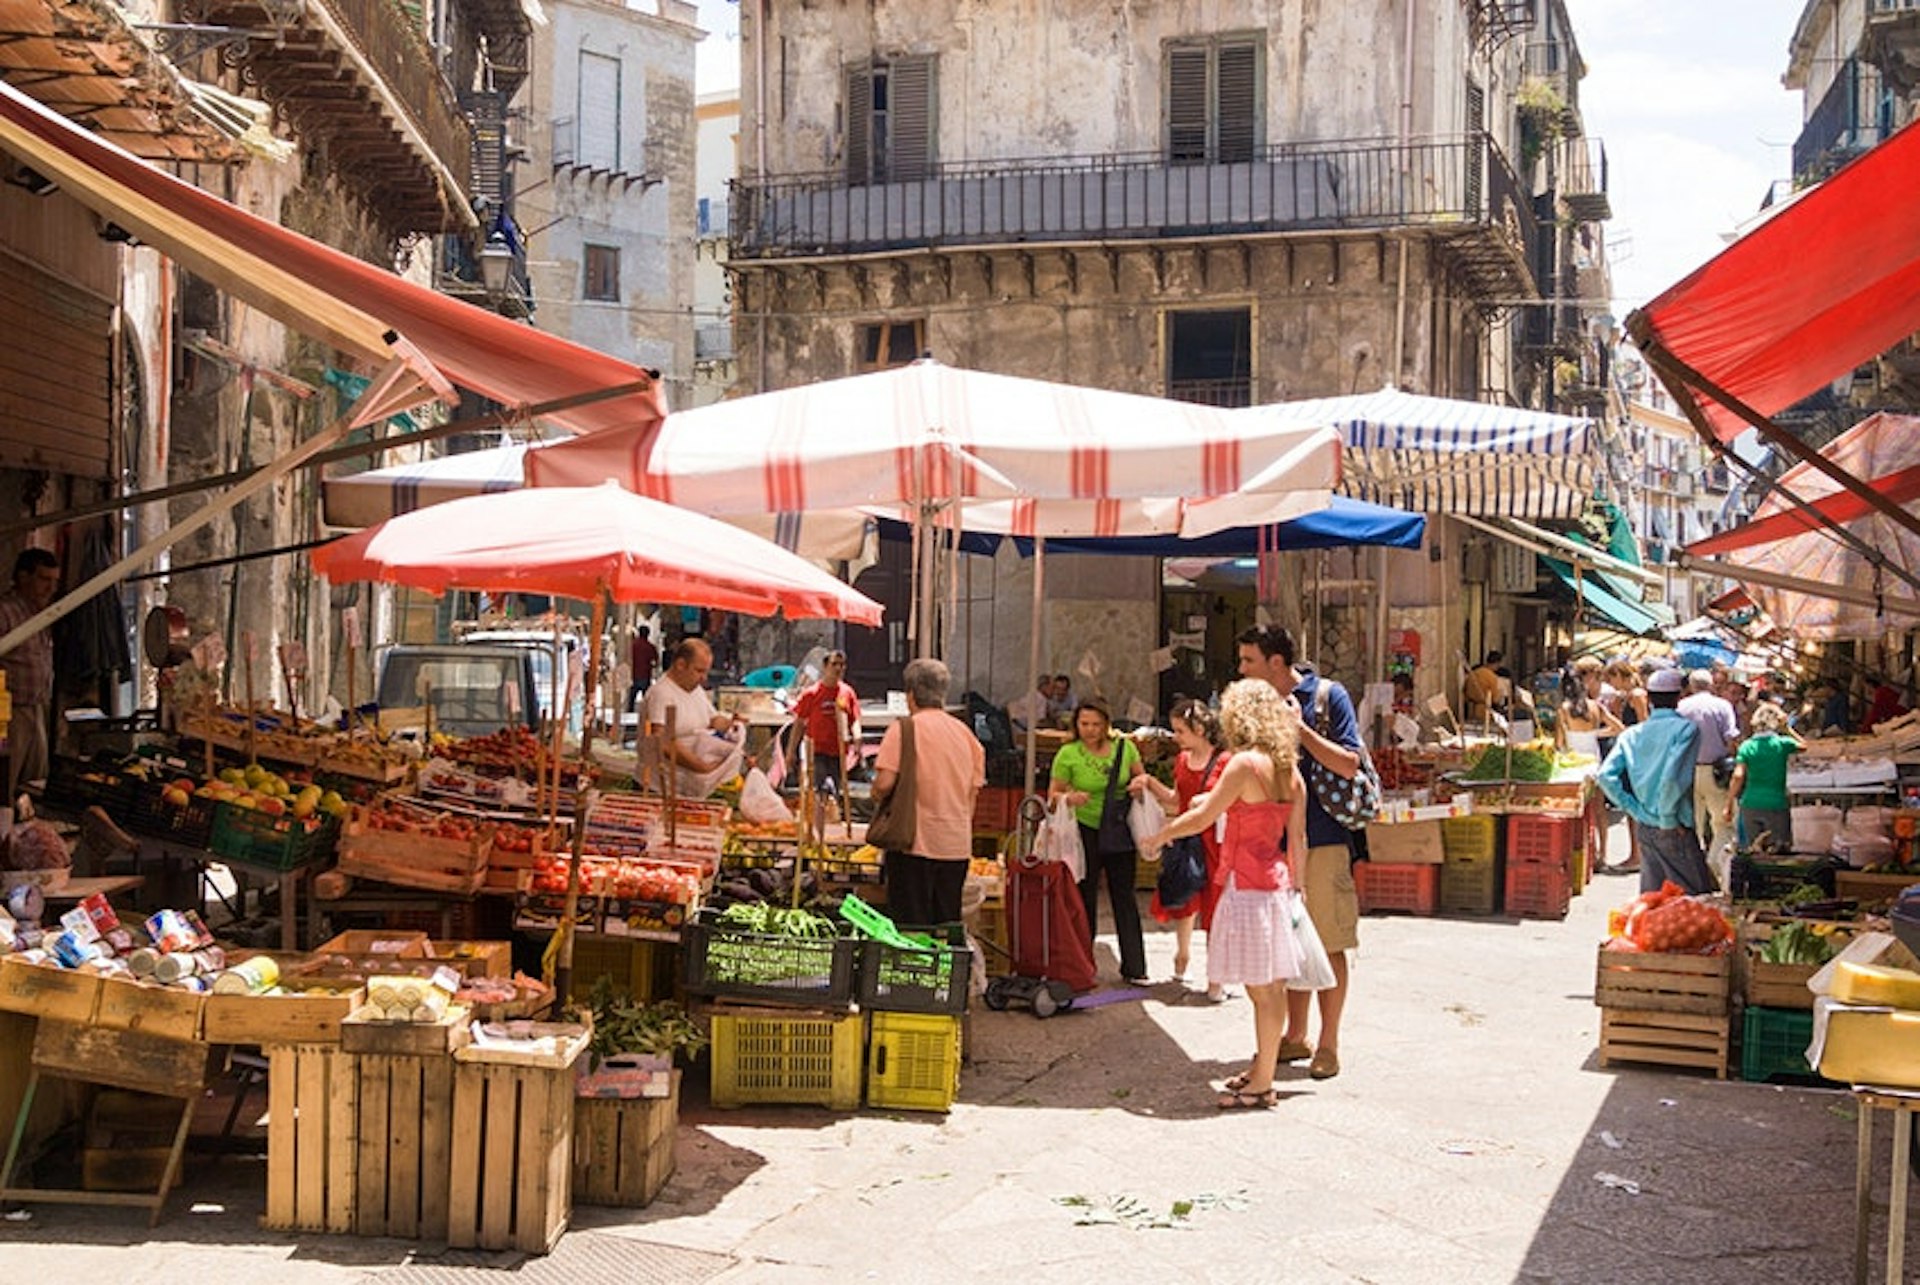 Capo Market in Palermo, Sicily